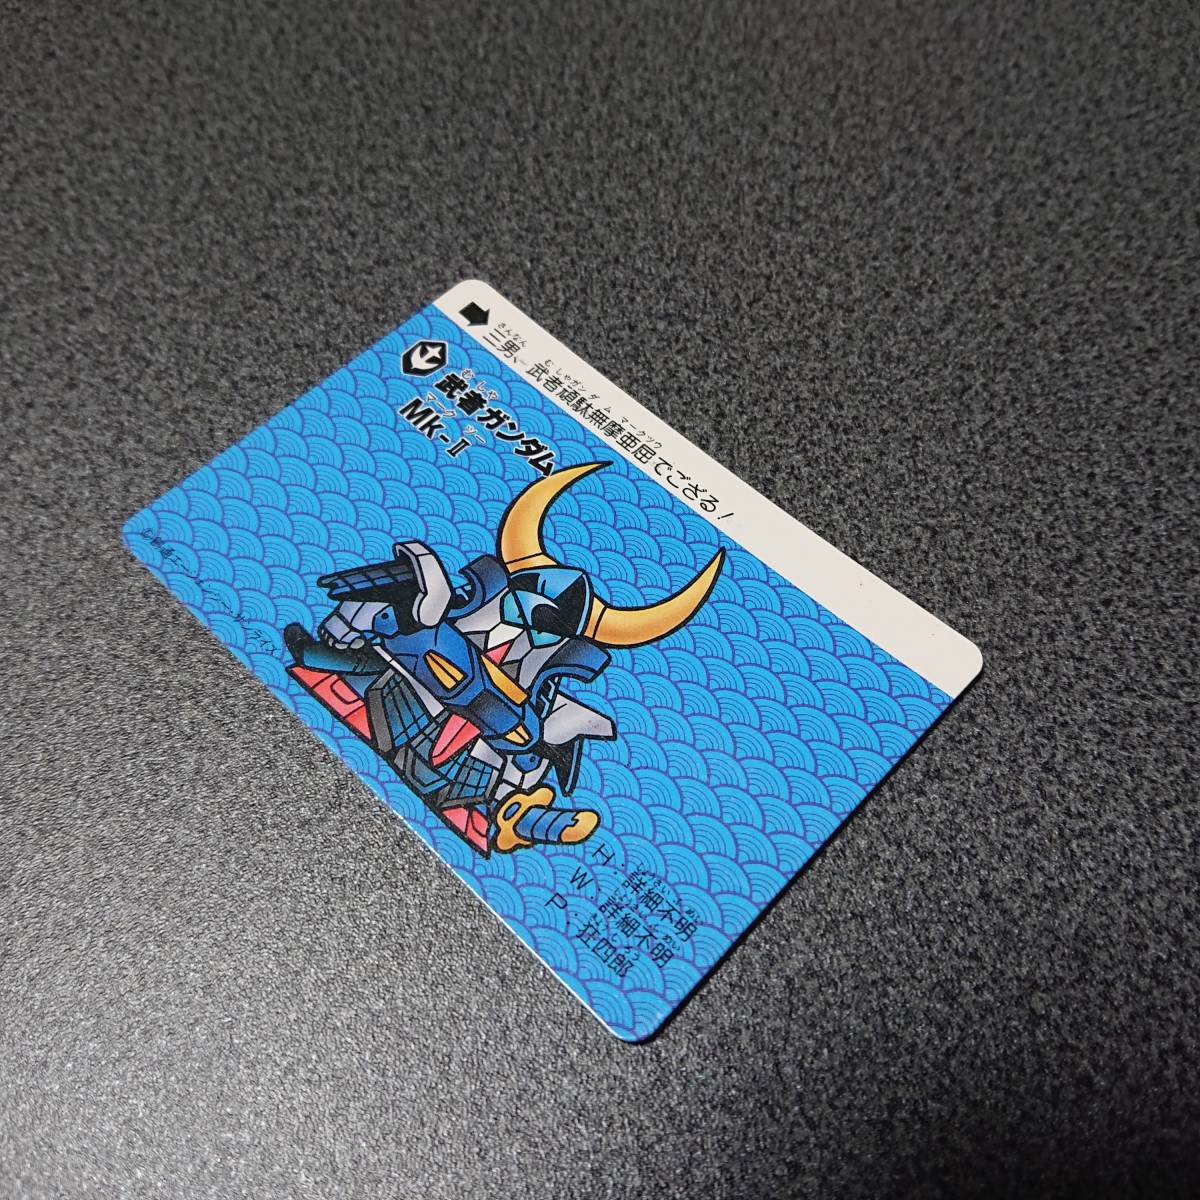 SDガンダムカードダス カードダスケース付属カード 等 3点セット 現状品